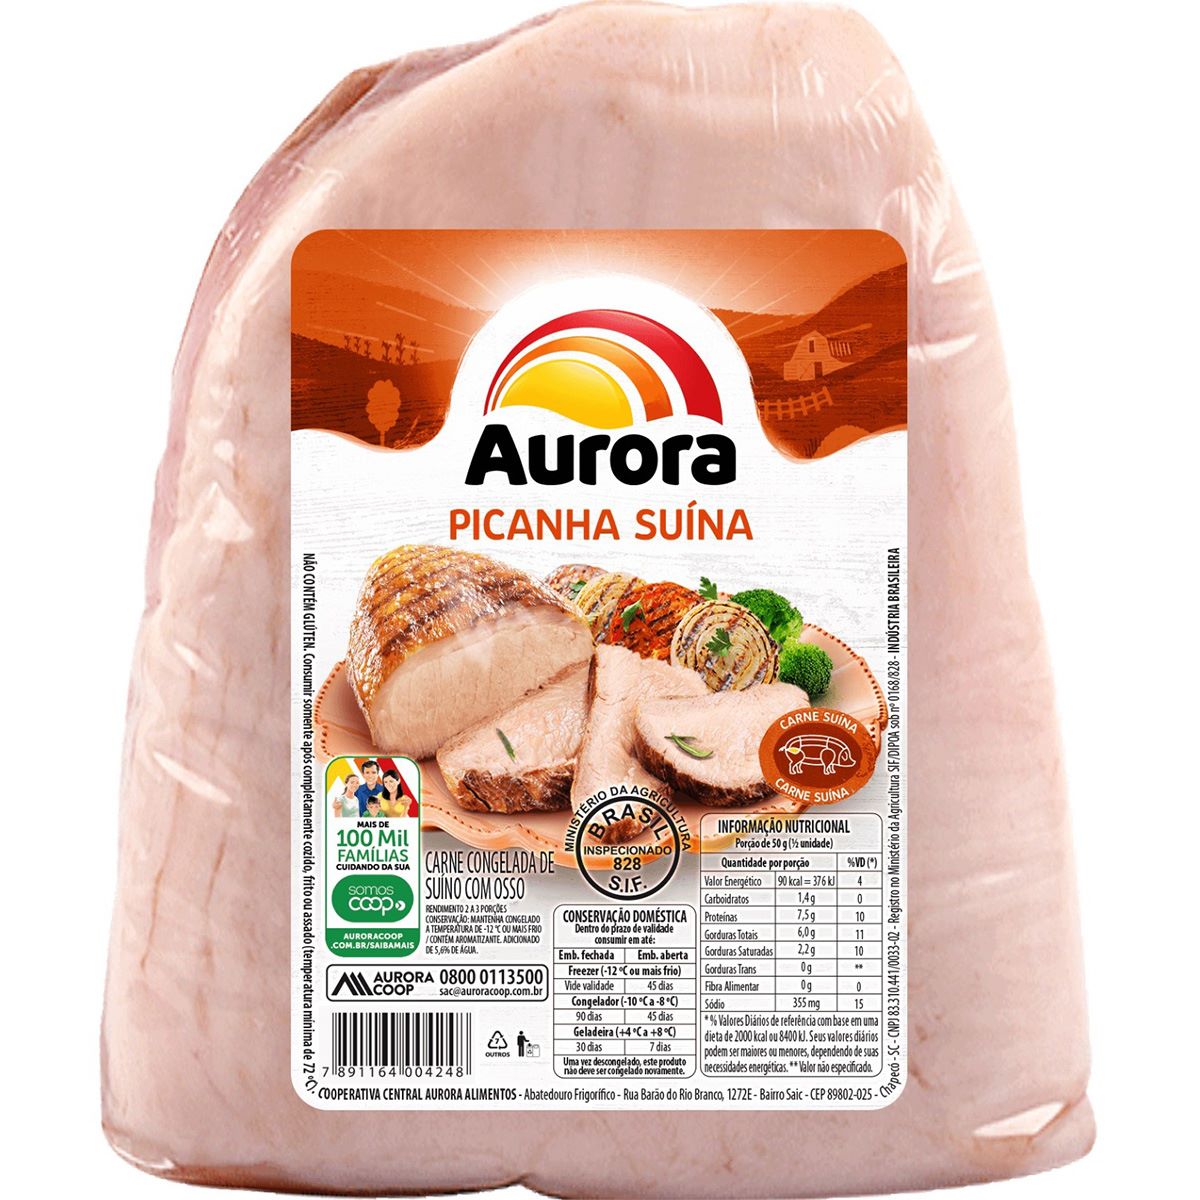 Aurora espera compensar dificuldades no mercado de carne suína com